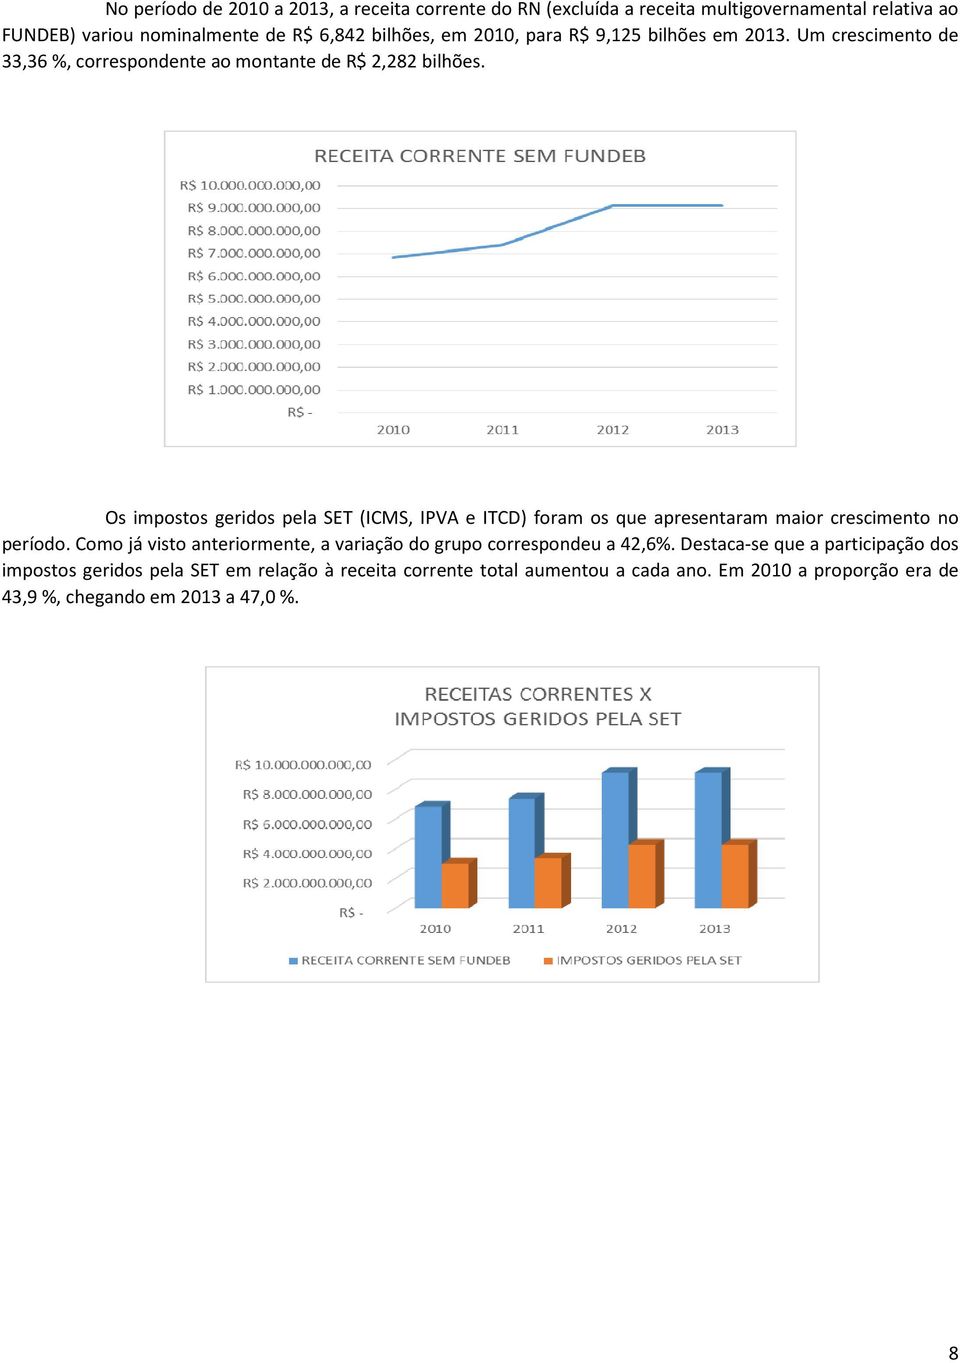 Os impostos geridos pela SET (ICMS, IPVA e ITCD) foram os que apresentaram maior crescimento no período.